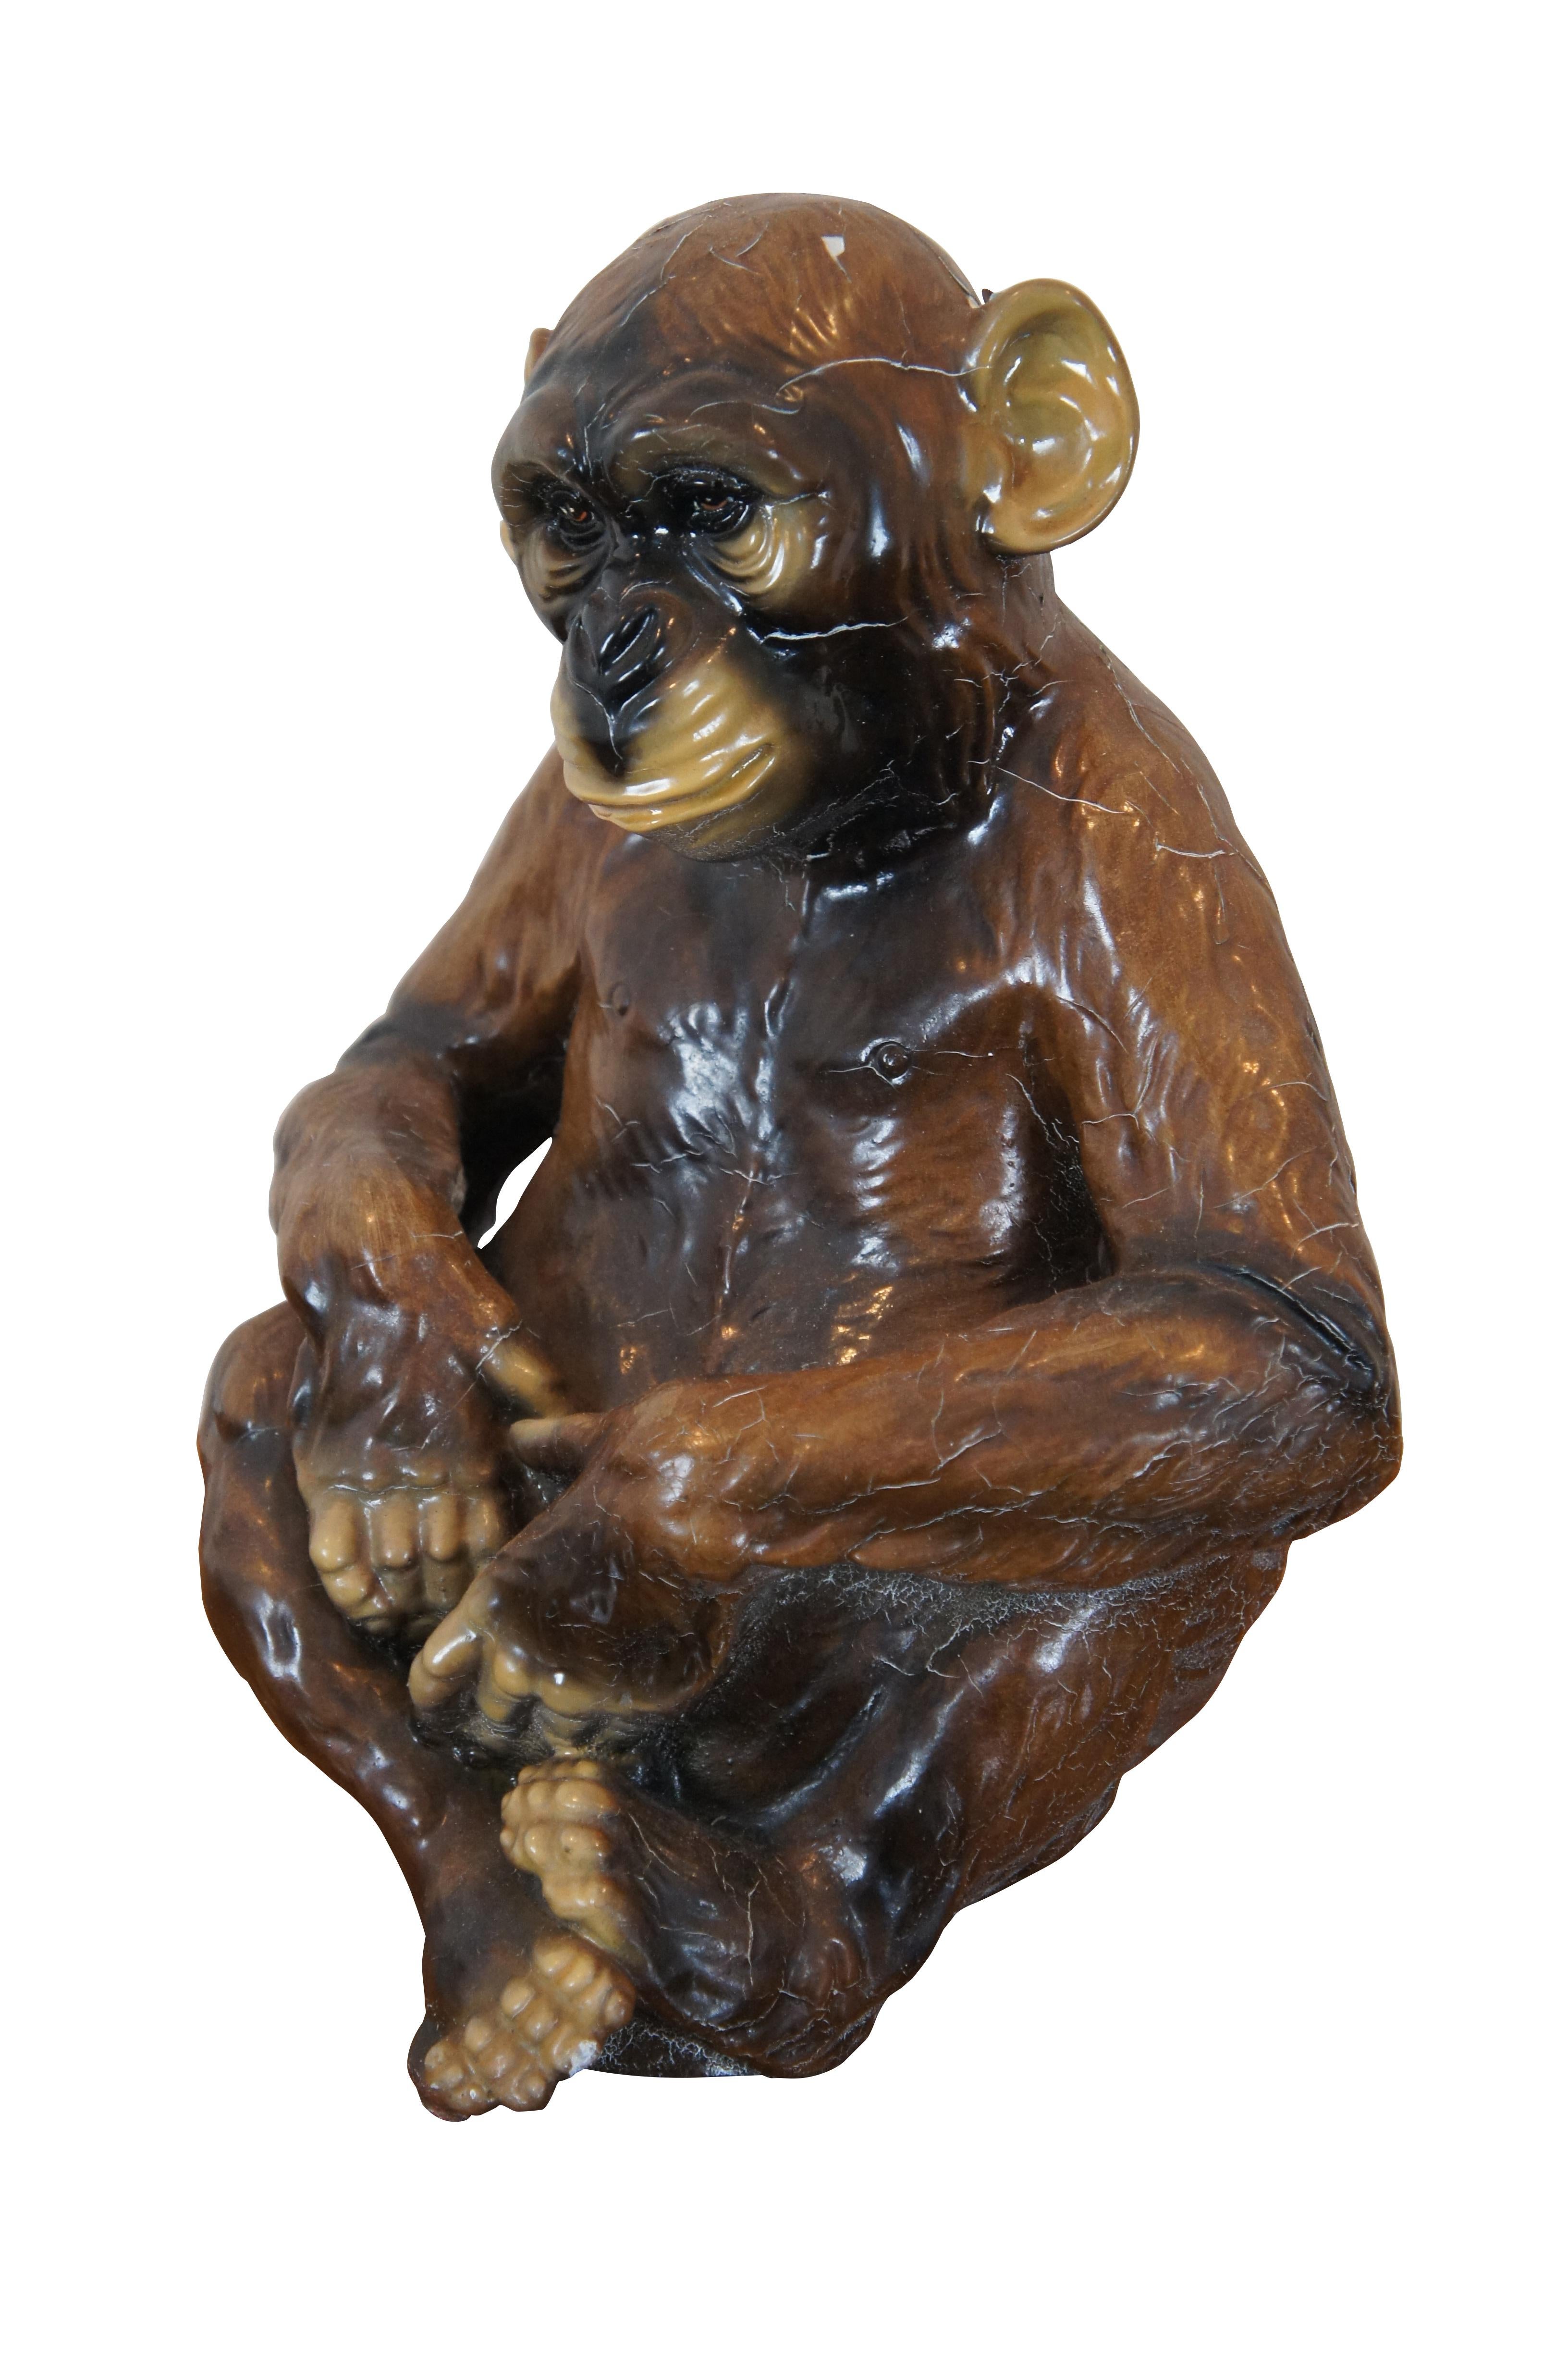 Seltene Vintage-Figur / Statue eines sitzenden braunen Primaten / Affen / Schimpansen von Marwal Industries Inc, hergestellt aus Kreide mit einer glänzenden Lackierung.

